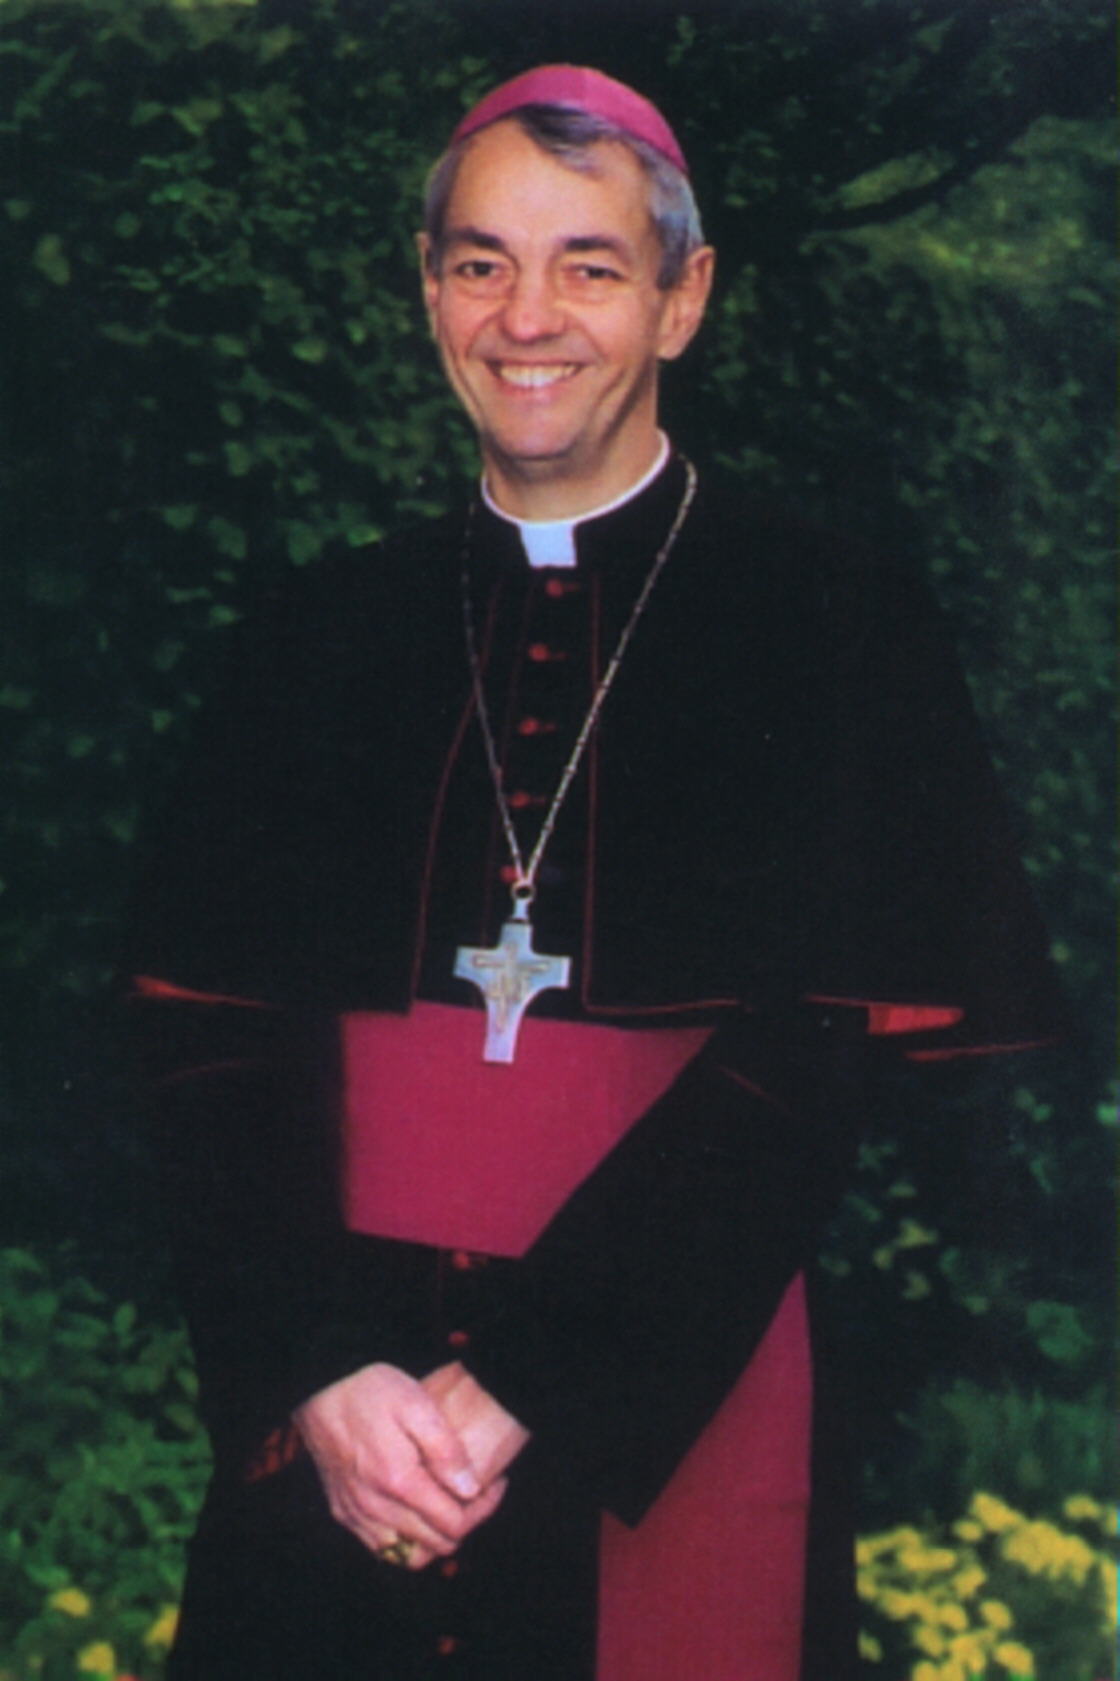 Erzbischof Prof. Dr. Ludwig Schick